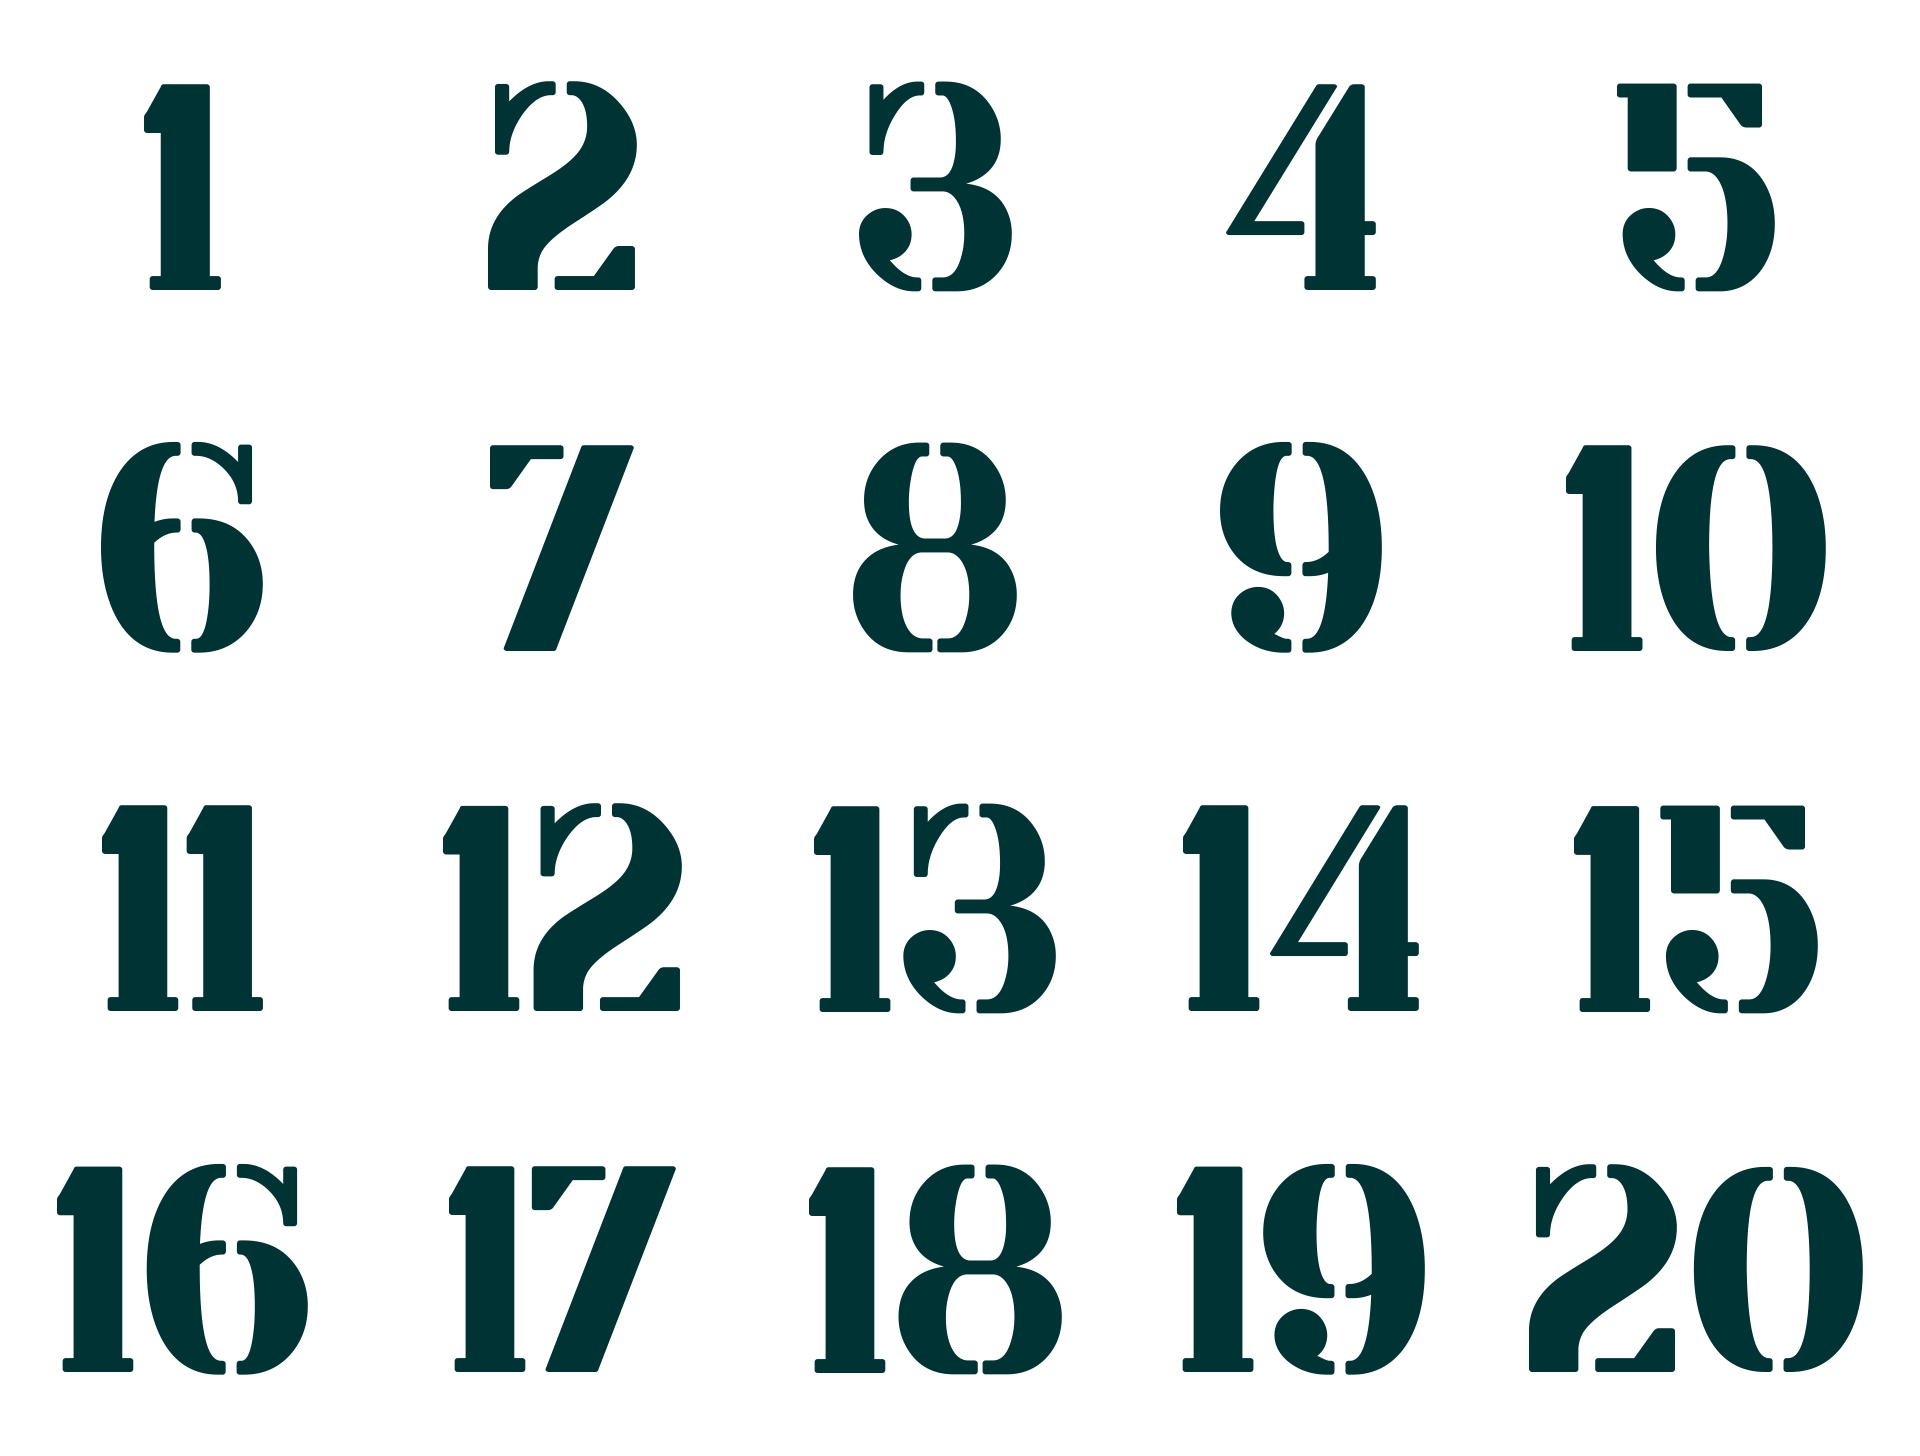 Stencil Numbers Printable